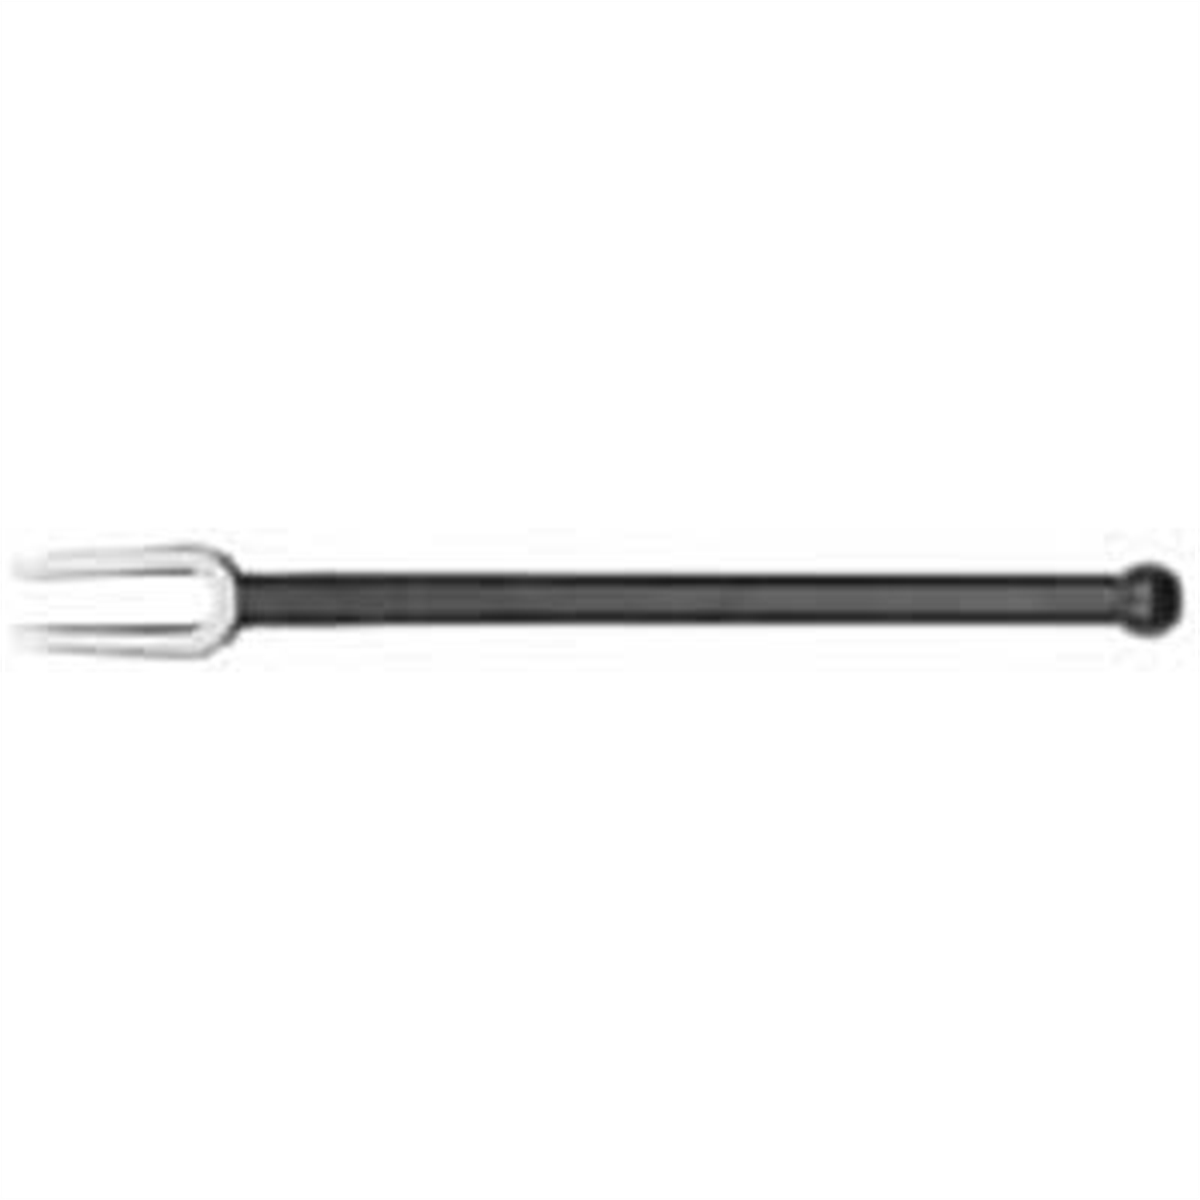 Shock Link / Tie Rod Separator B39 - 16 In